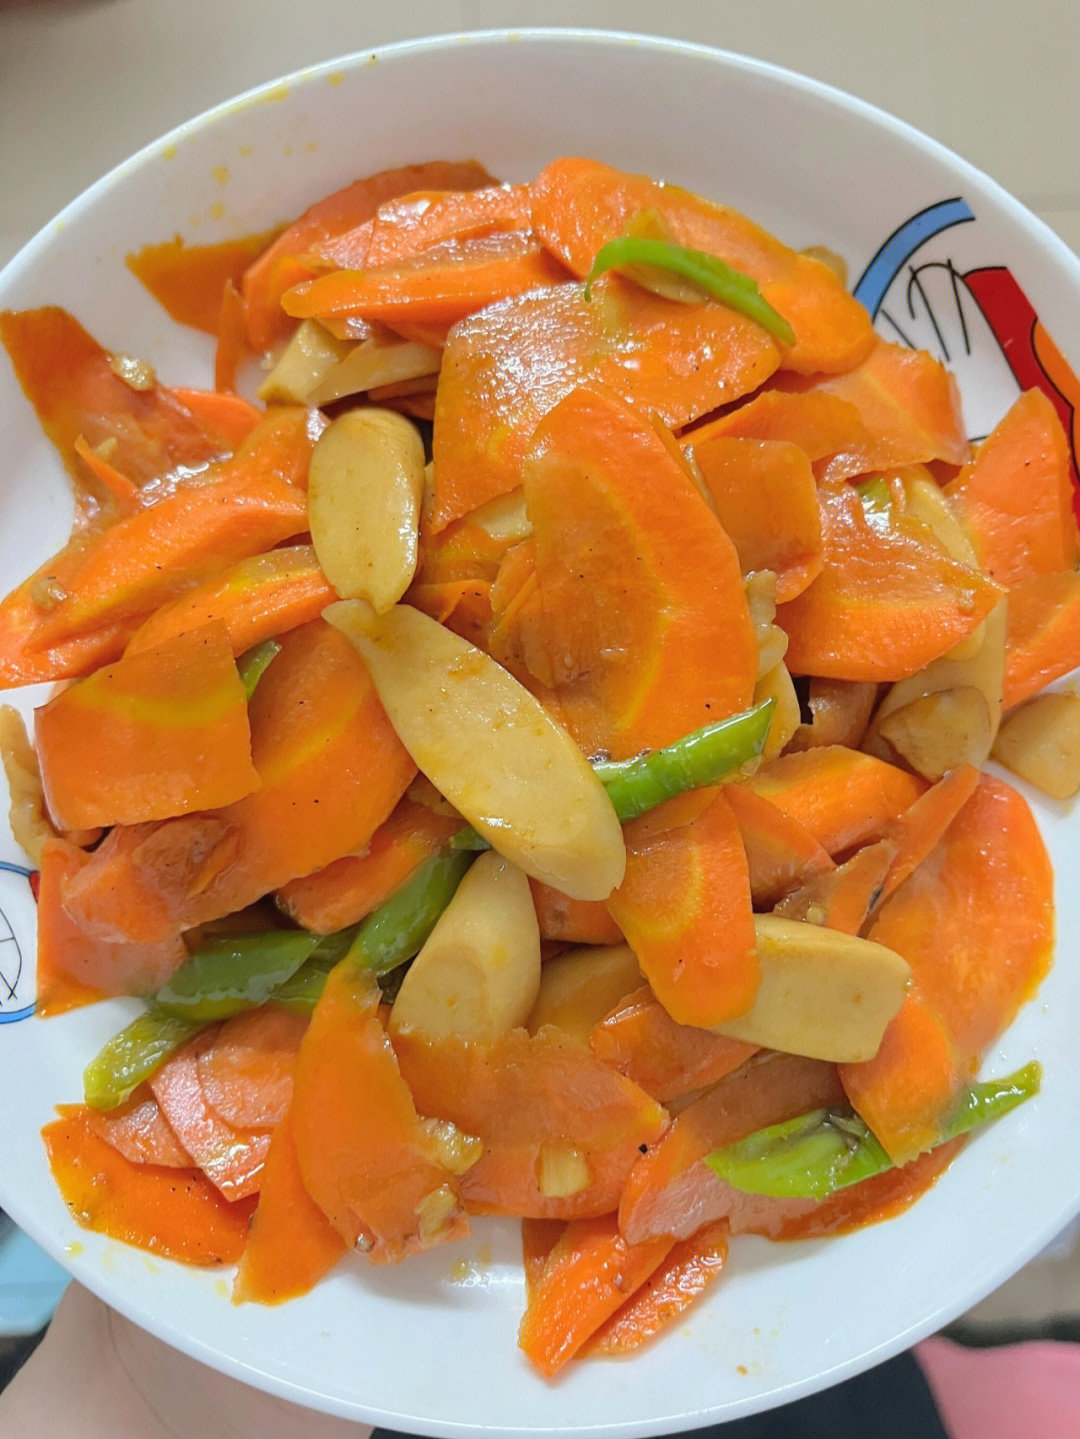 以前不爱吃胡萝卜的我也爱上了94食材:胡萝卜09 火腿肠 蒜片 青椒